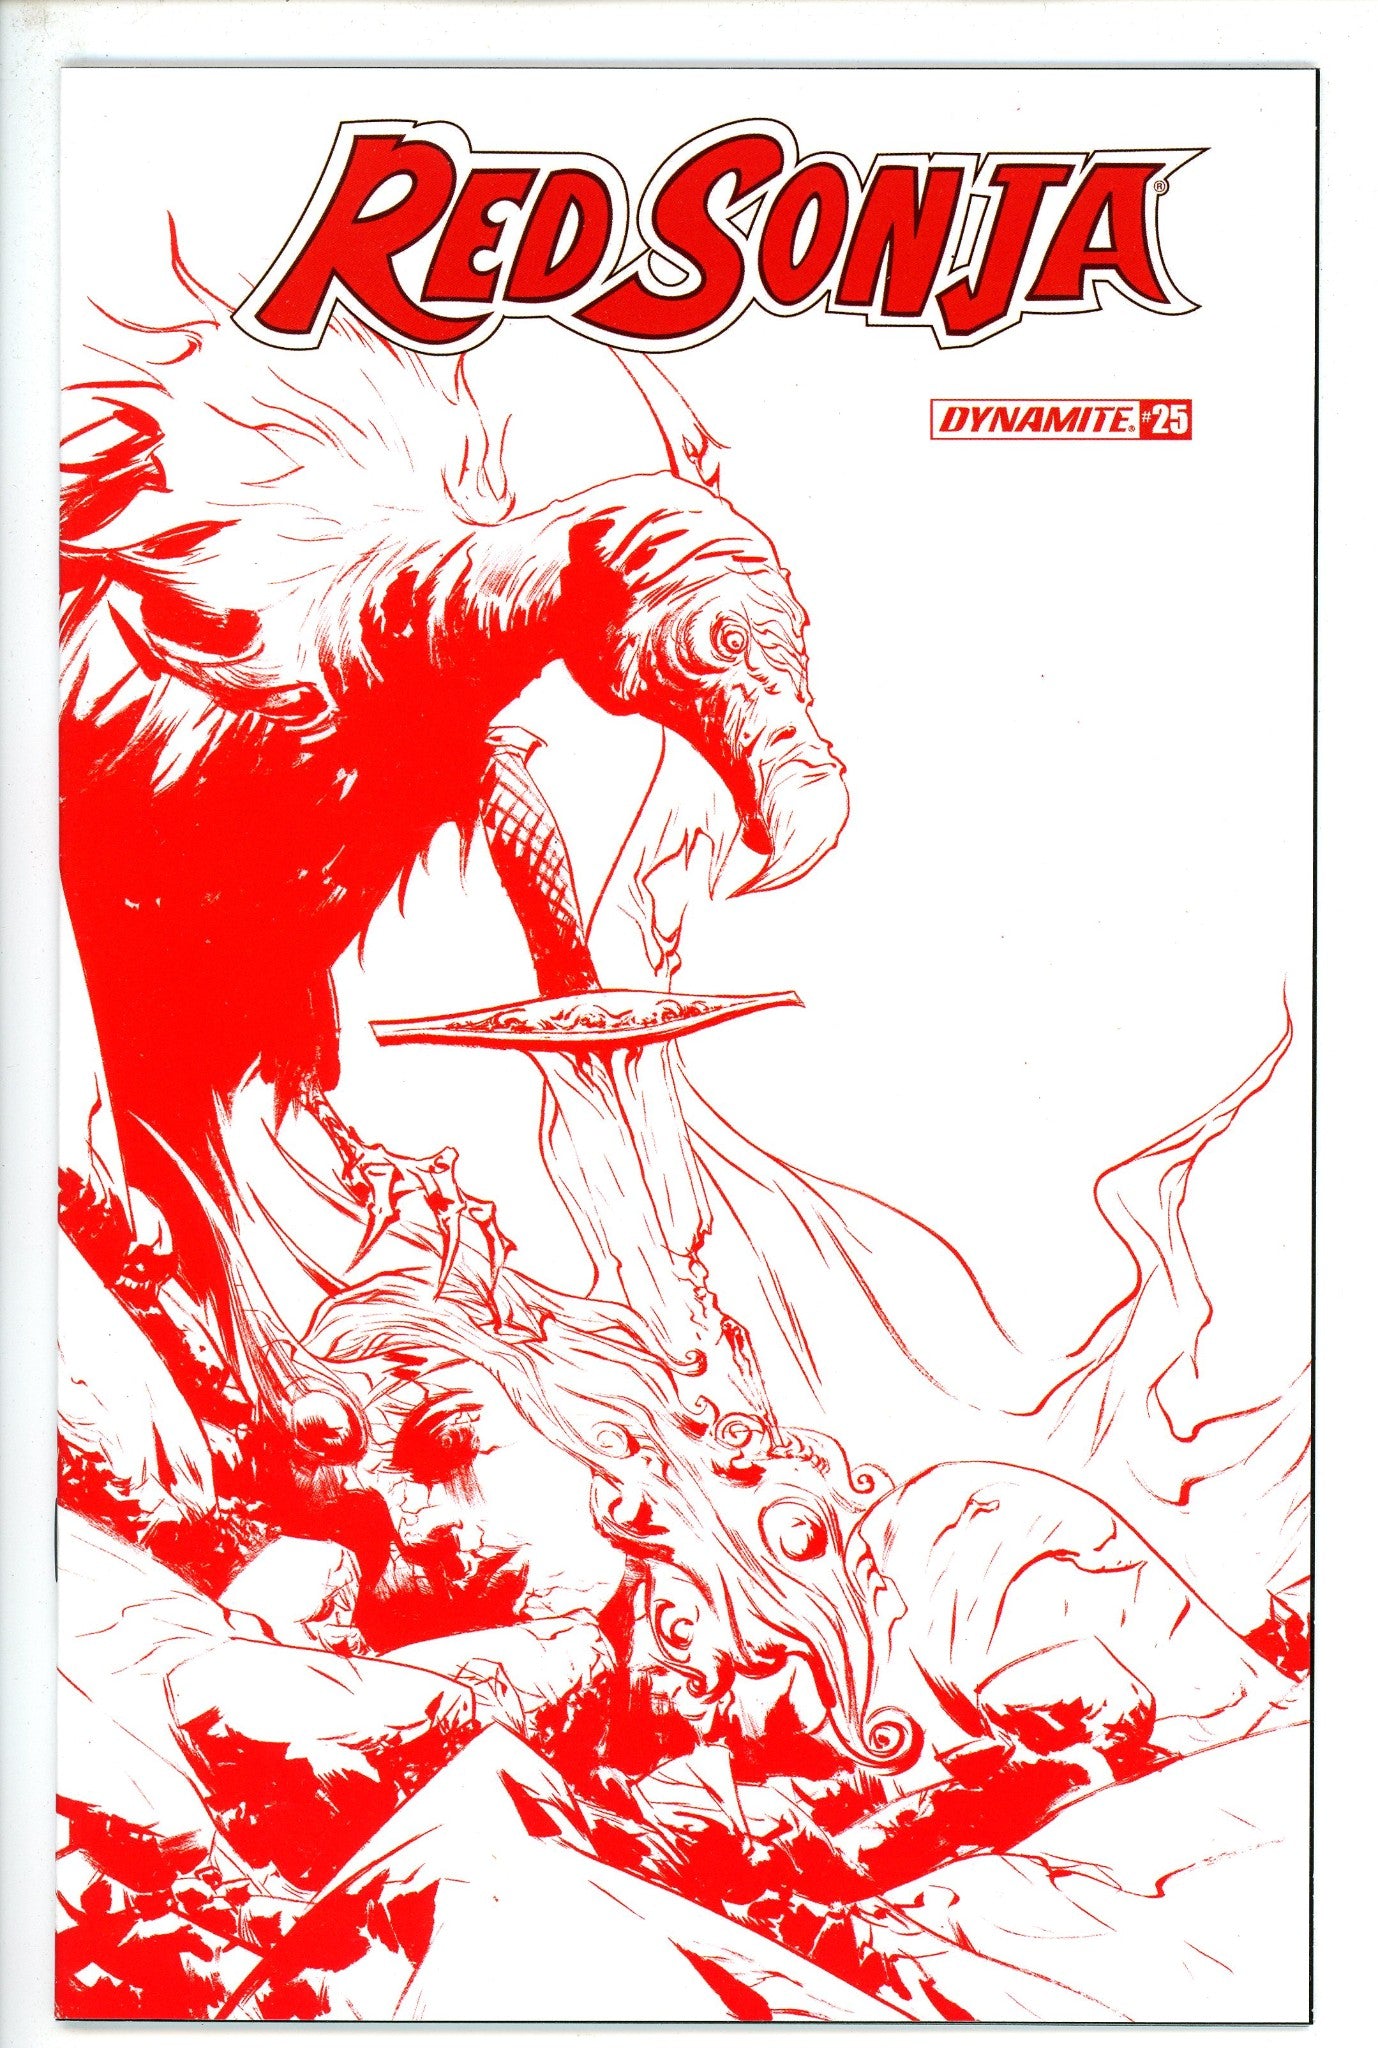 Red Sonja Vol 5 25 Lee Variant-Dynamite-CaptCan Comics Inc